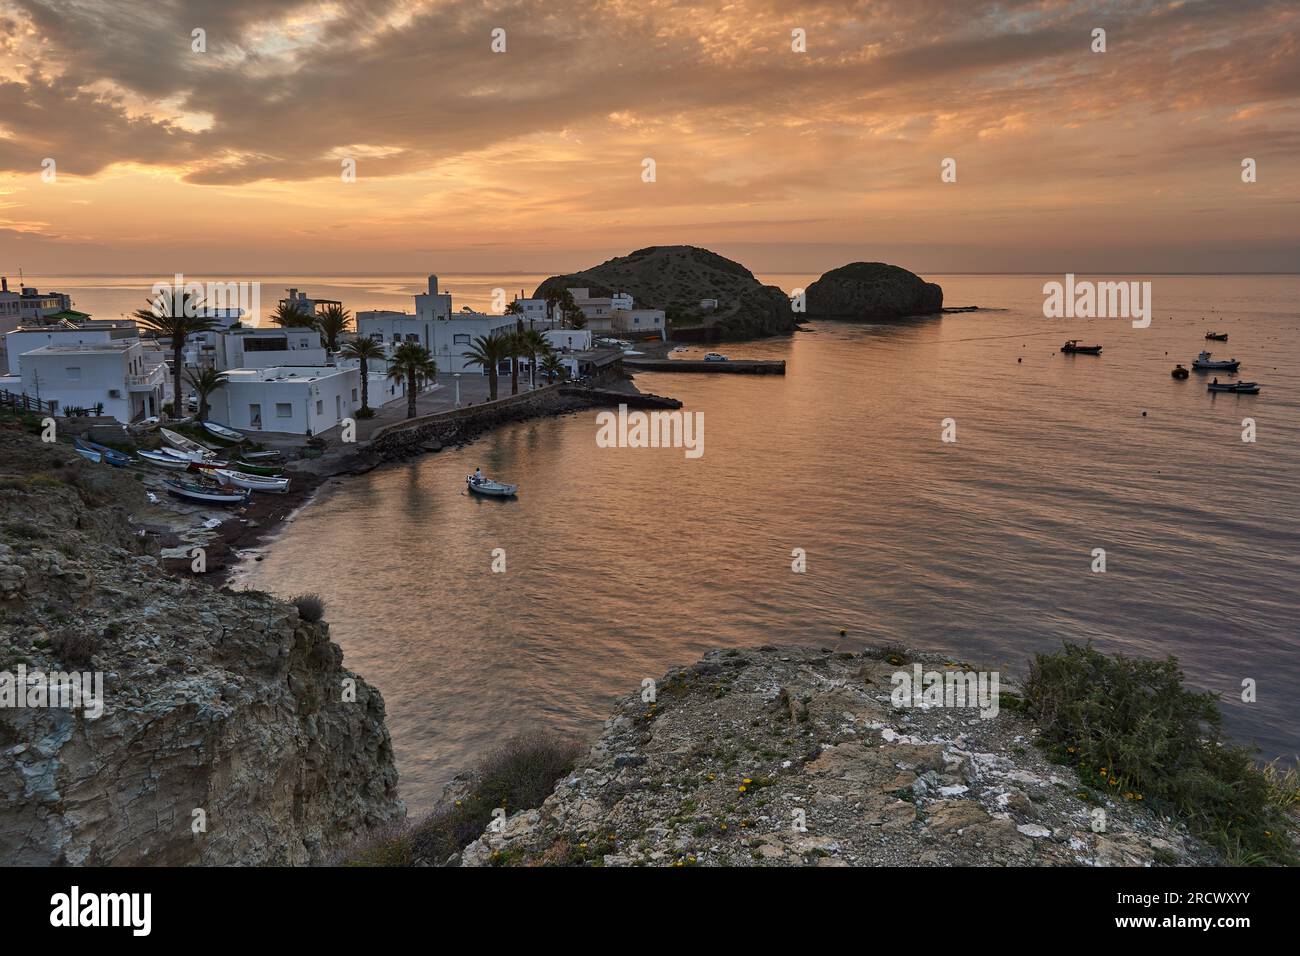 Andalusian fishing village of La Isleta del Moro at sunrise,Cabo de Gata,Almeria,Spain,Biosphere Reserve,Mediterranean Sea Stock Photo